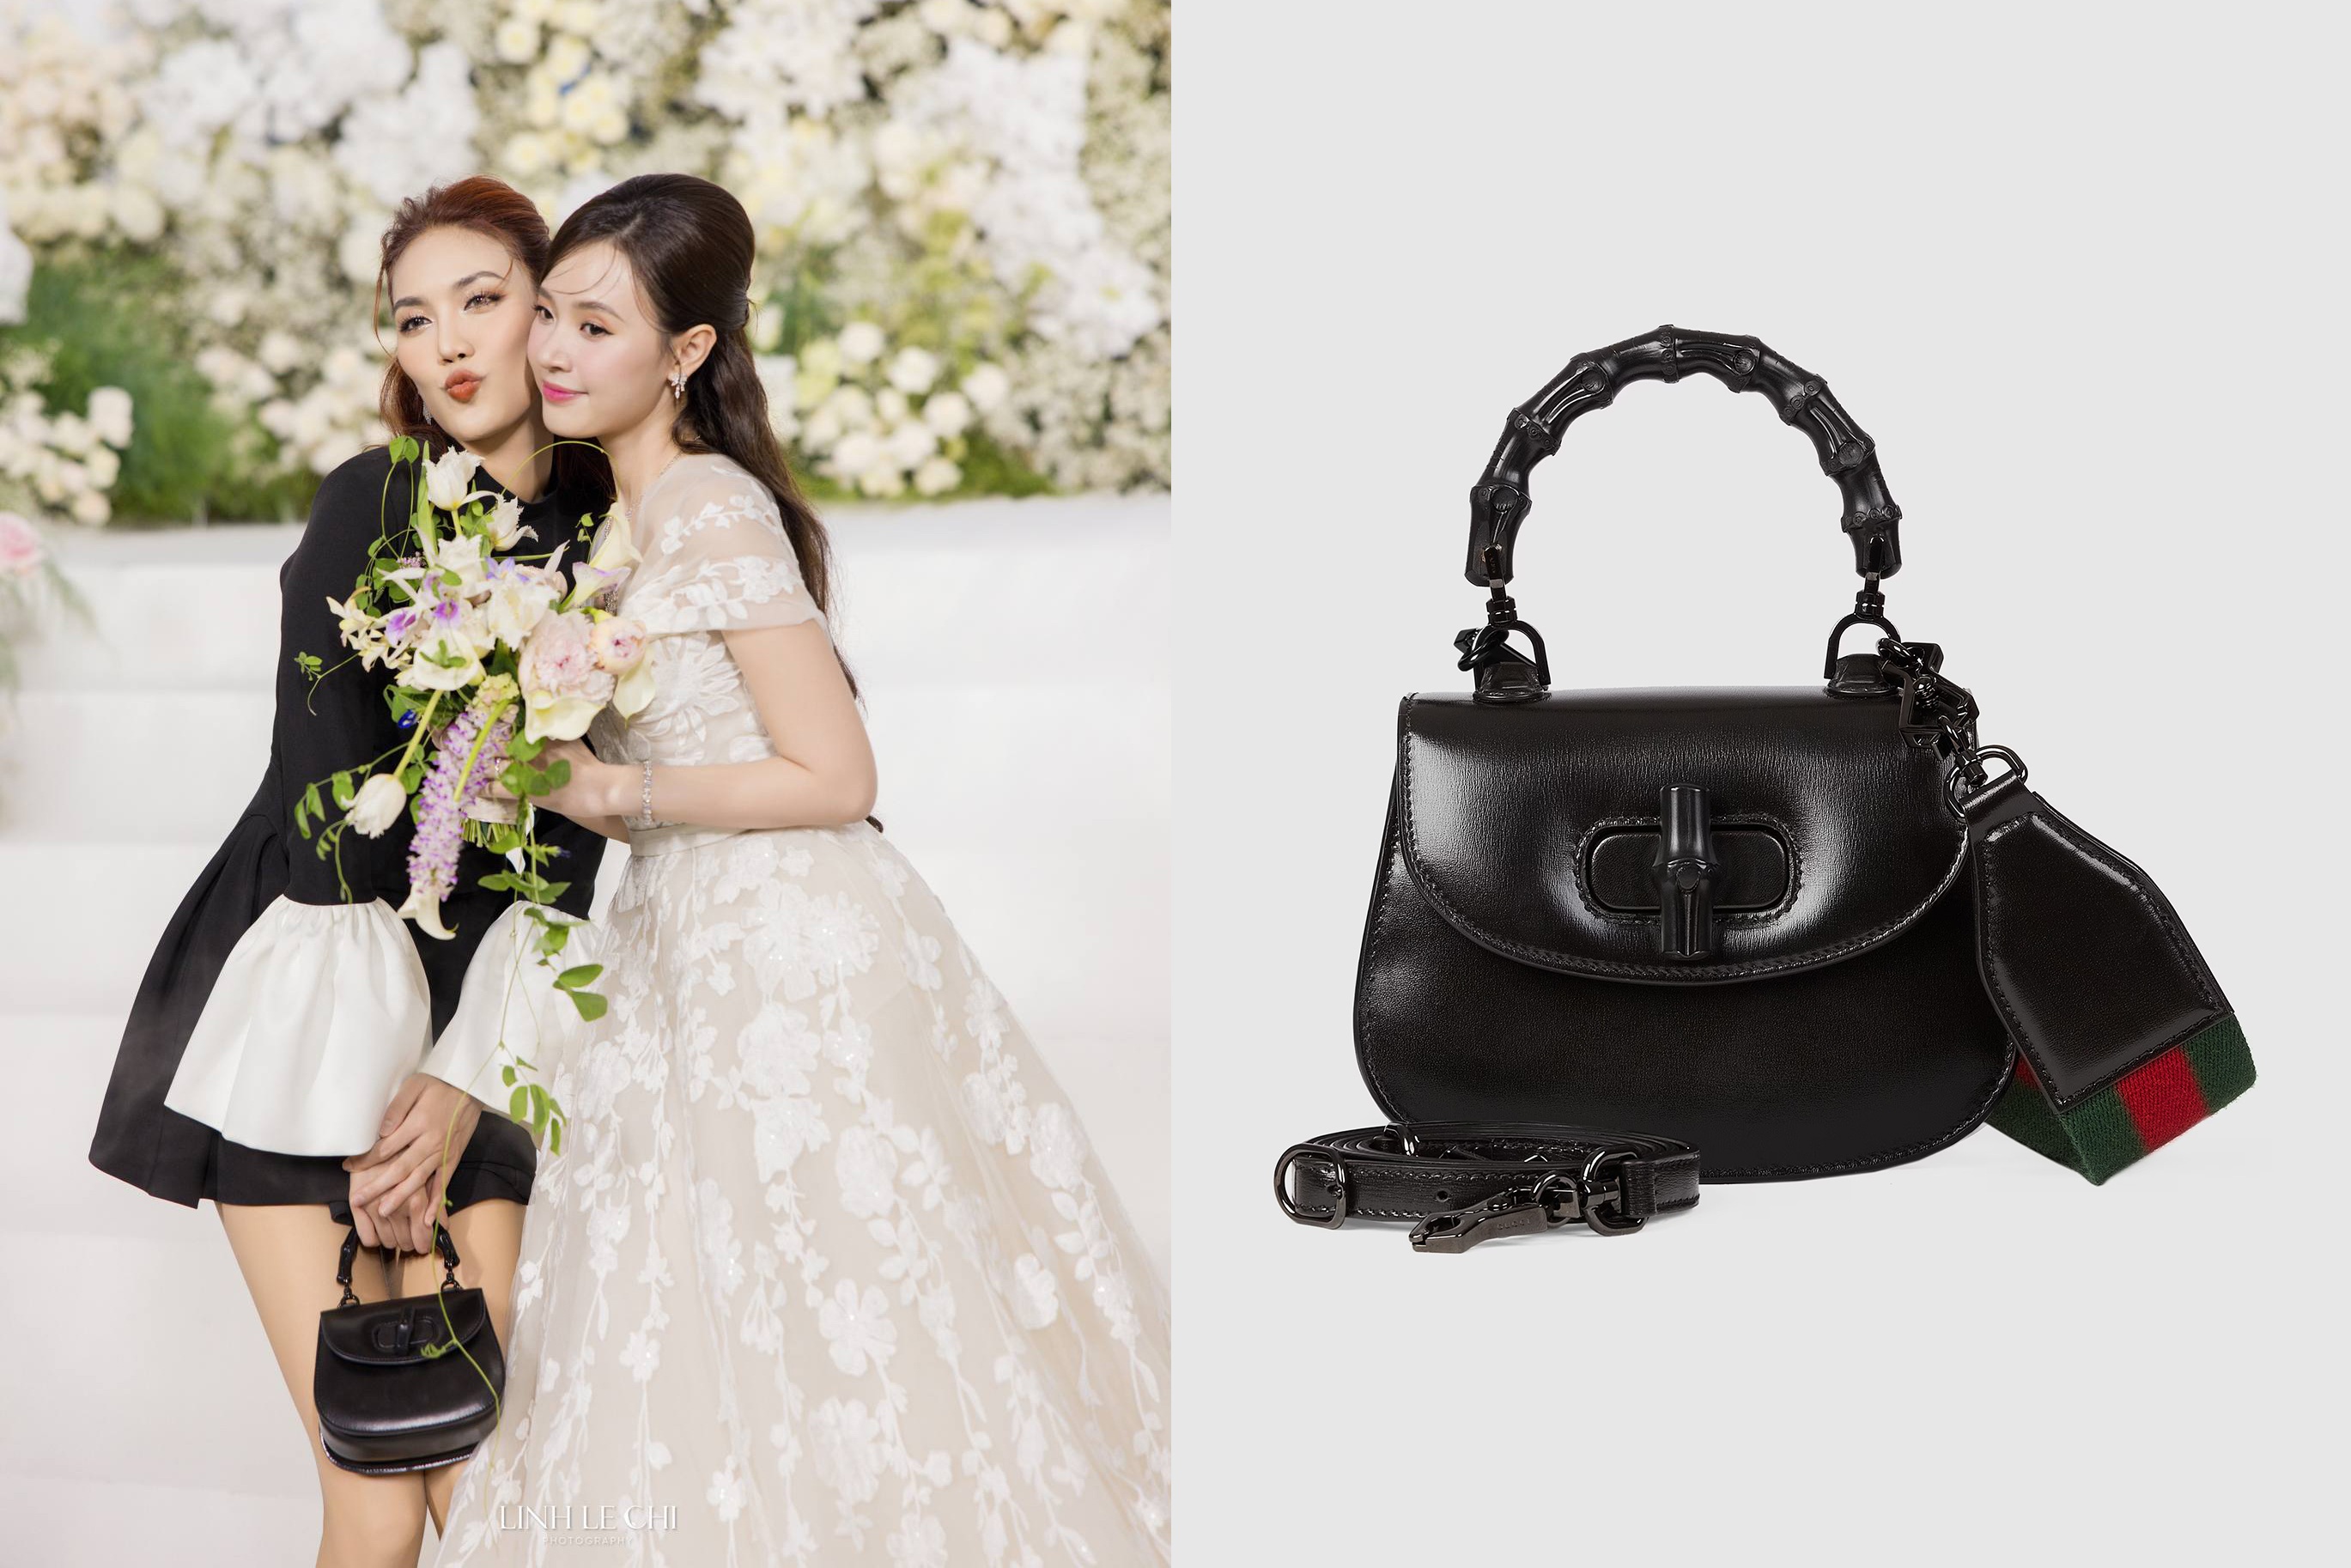 View - Nhã Phương, Sĩ Thanh xách túi Dior hơn 140 triệu đồng đến đám cưới Midu | Báo Dân trí